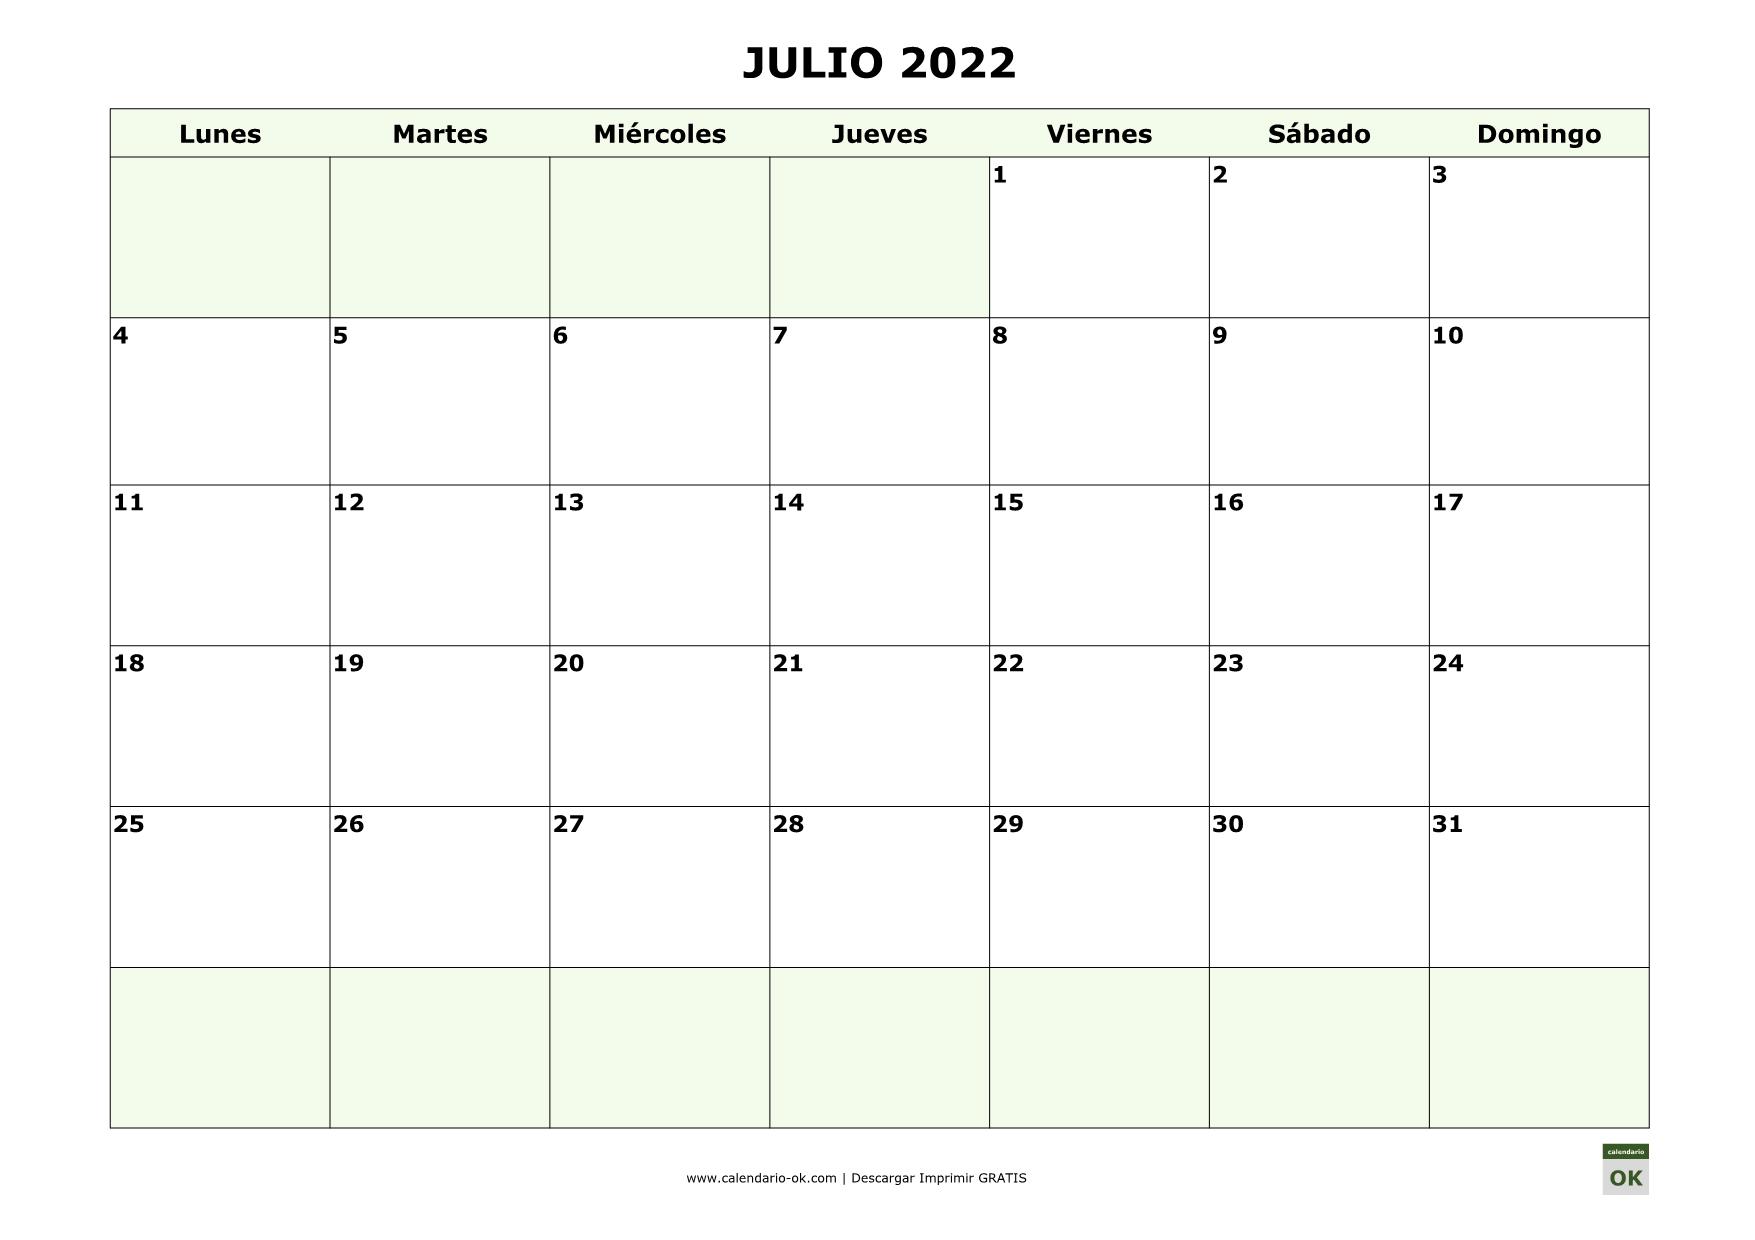 Julio 2022 para IMPRIMIR